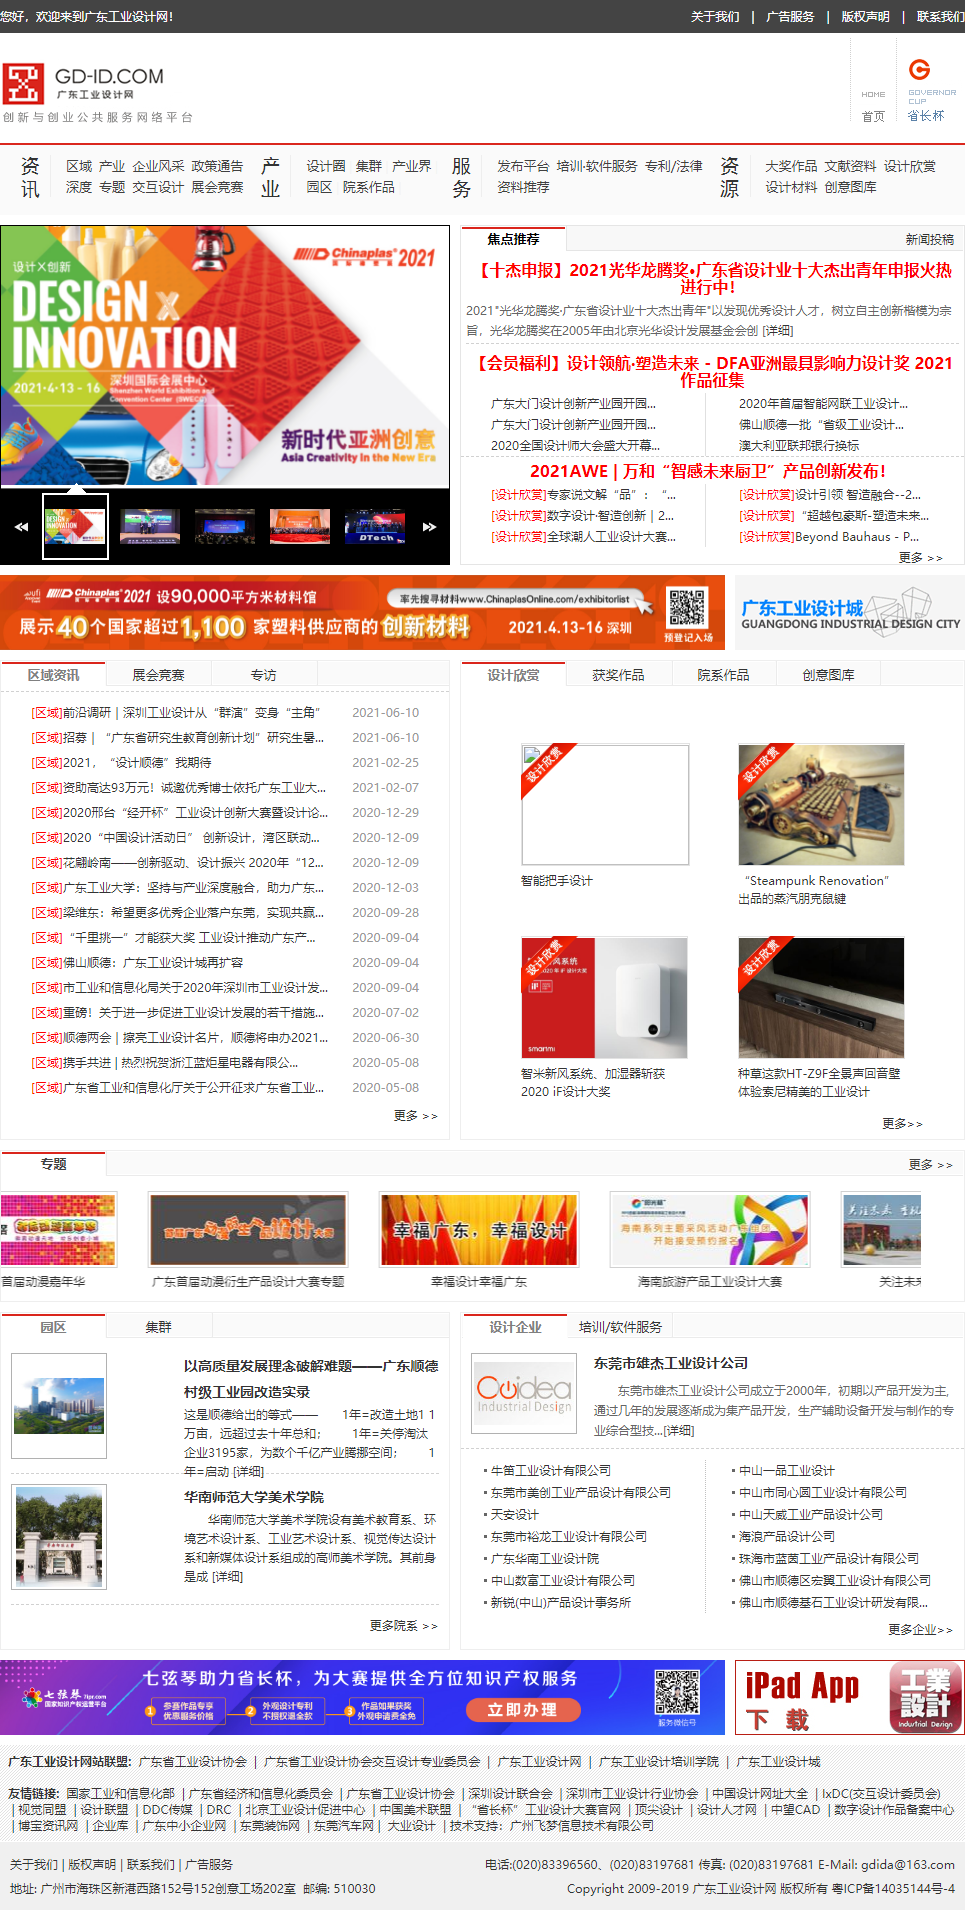 广东省工业设计协会网站案例